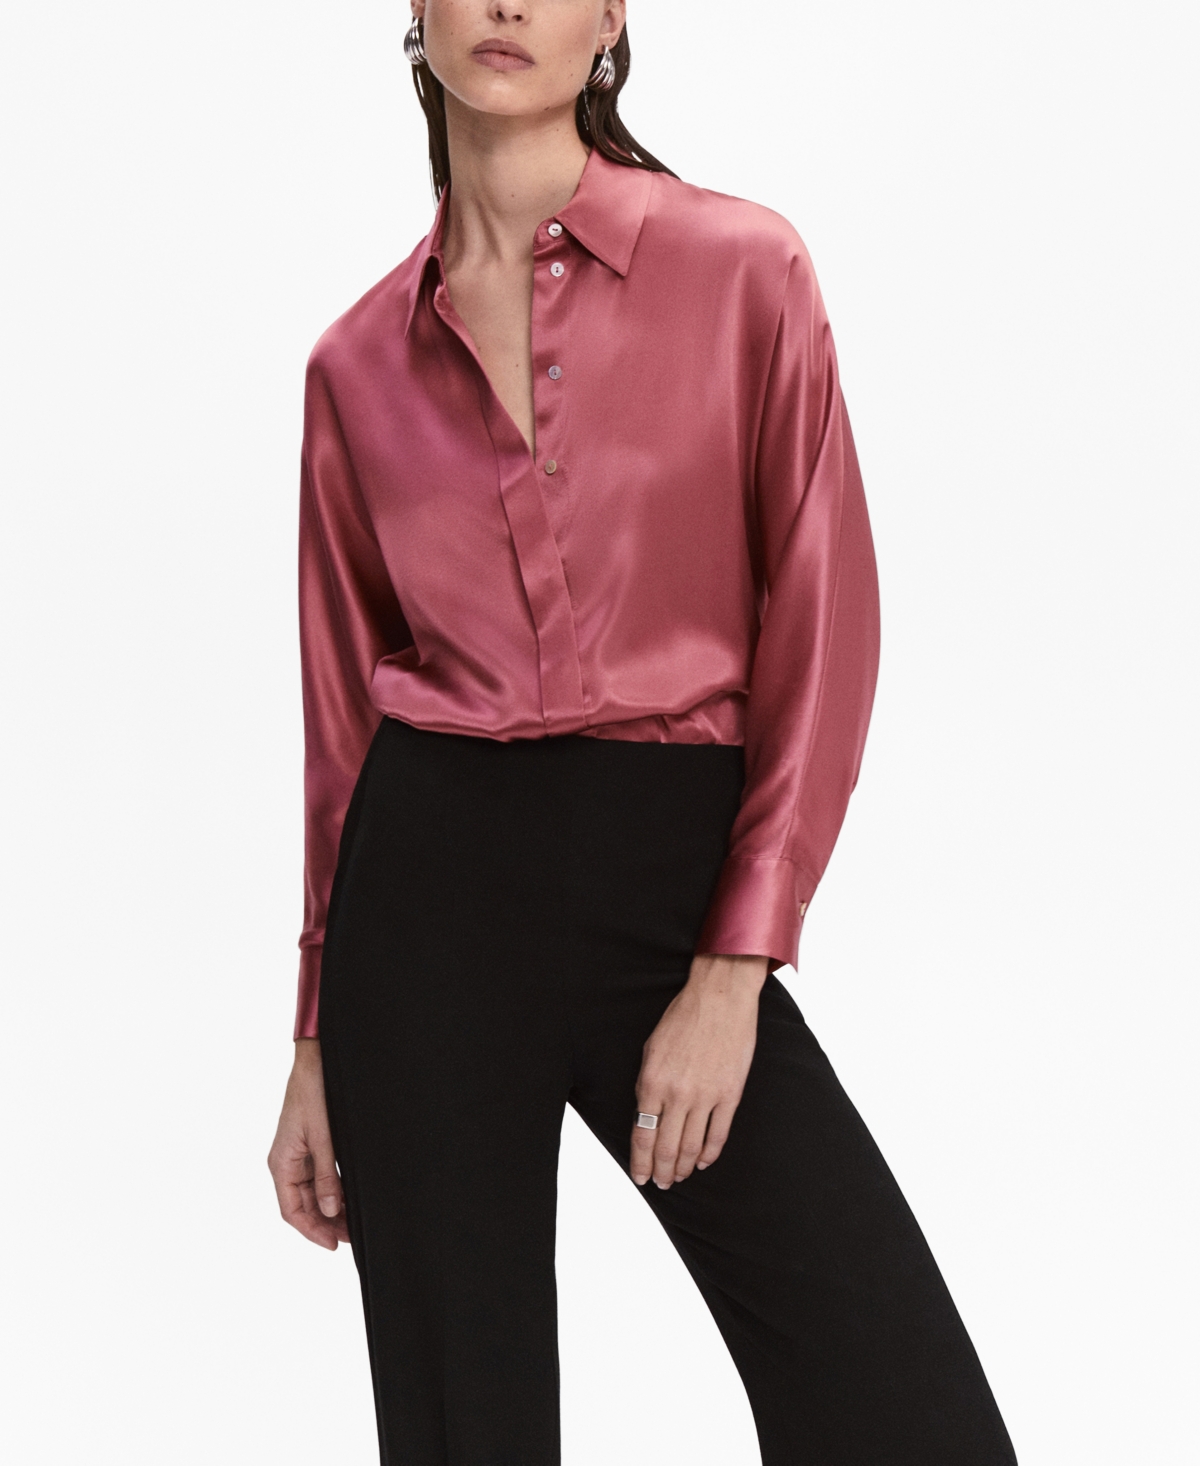 Zara - Geometric Print Satin Shirt - Ecru Black - Women